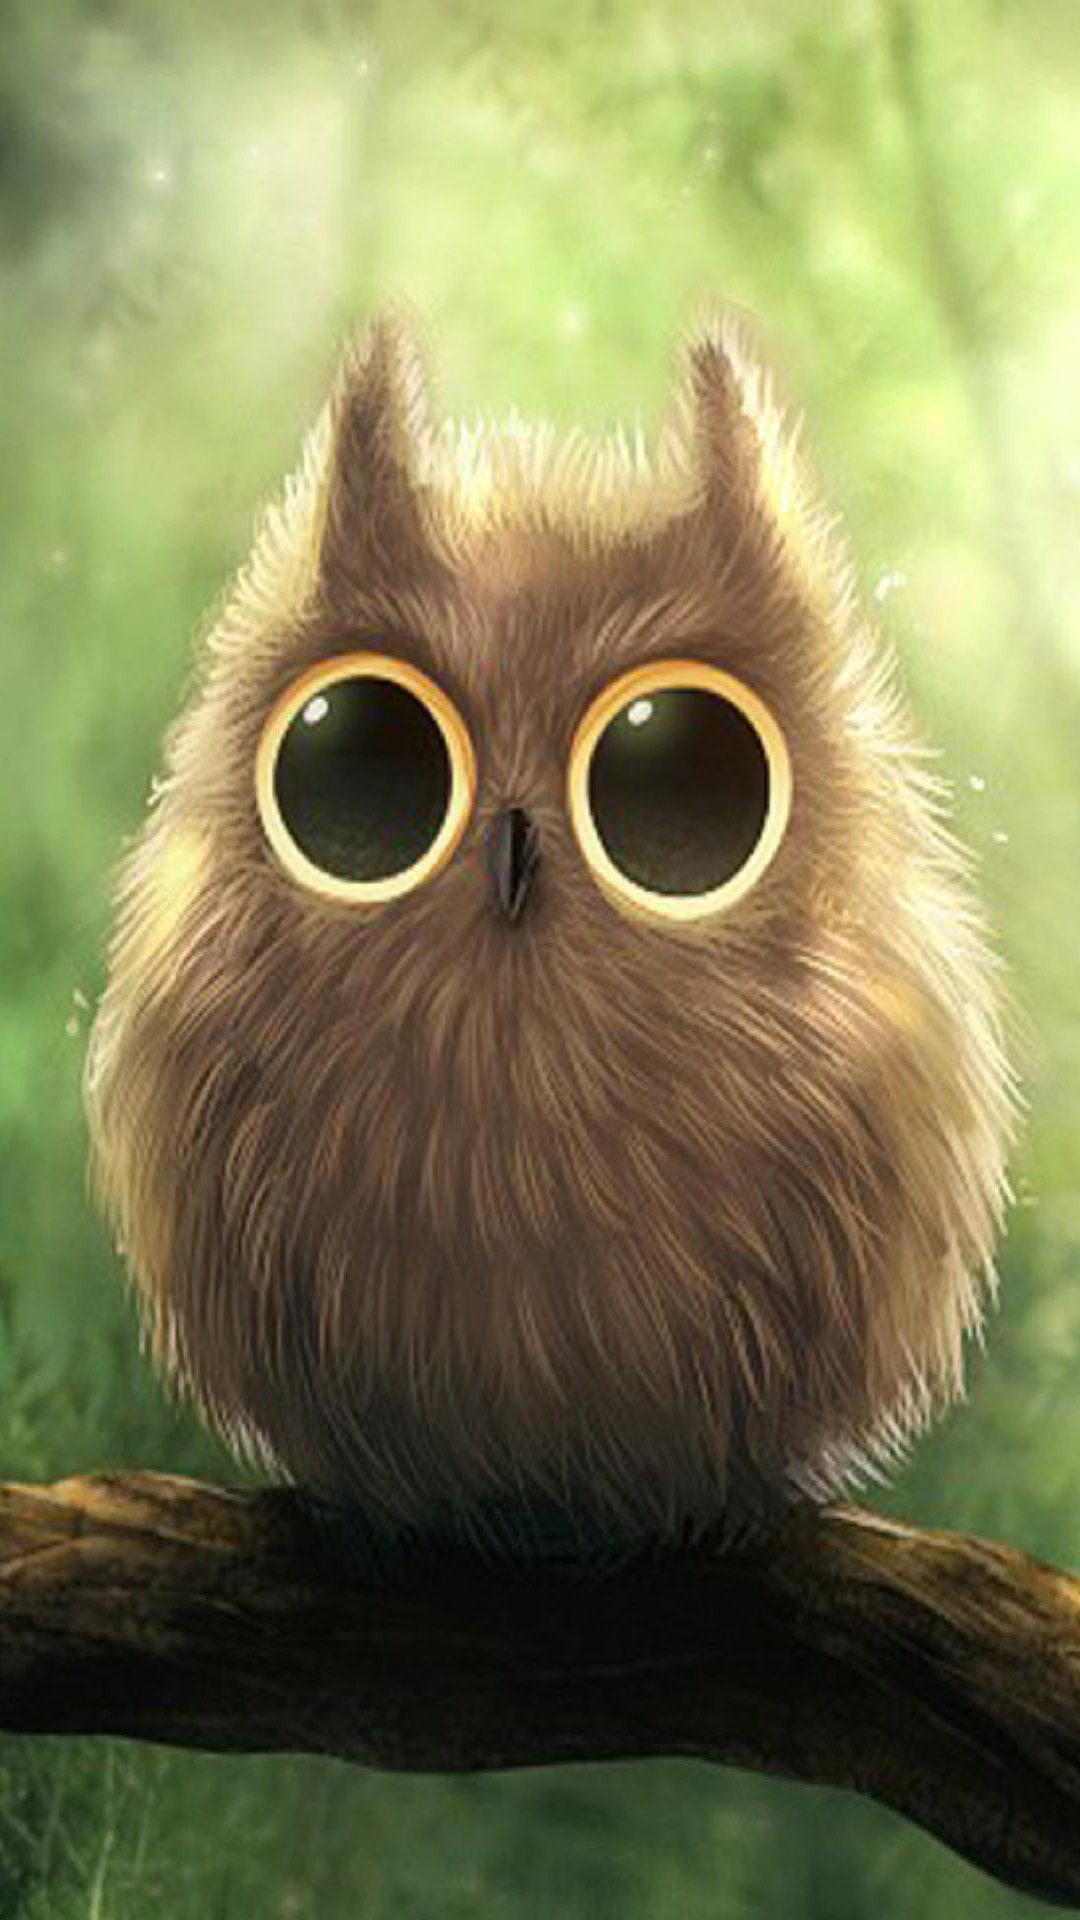 [73+] Cute Owl Wallpaper on WallpaperSafari